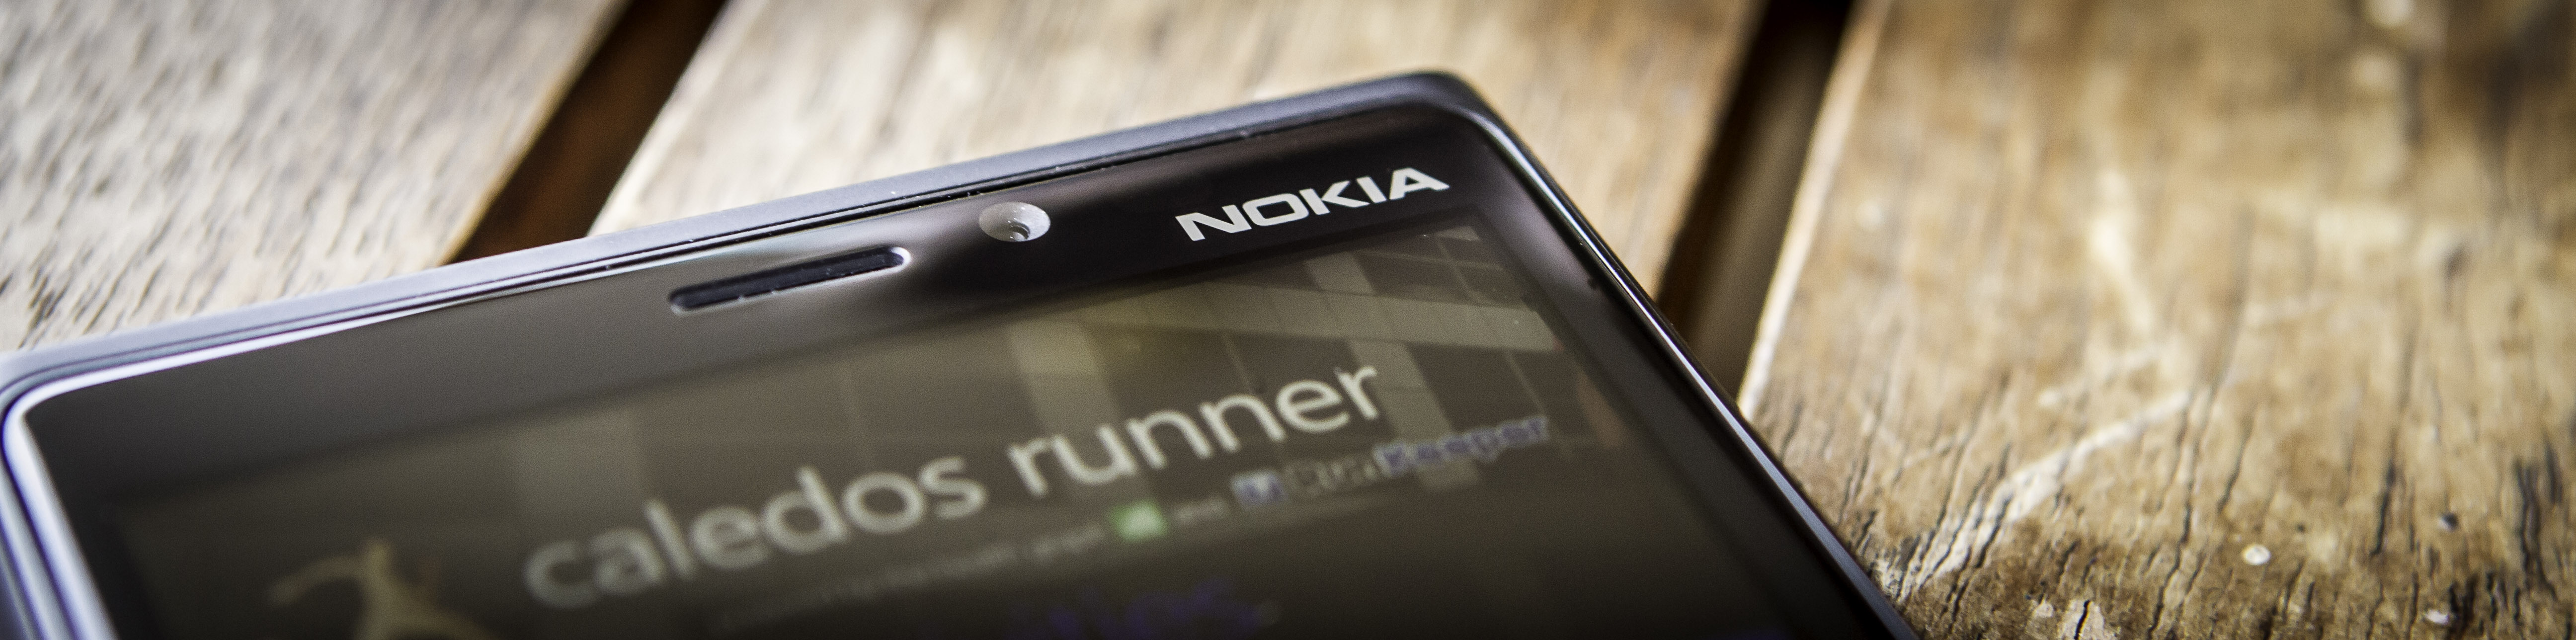 NOKIA Lumia920 ：回顧這款曇花一現的「Windows Phone 救世主」